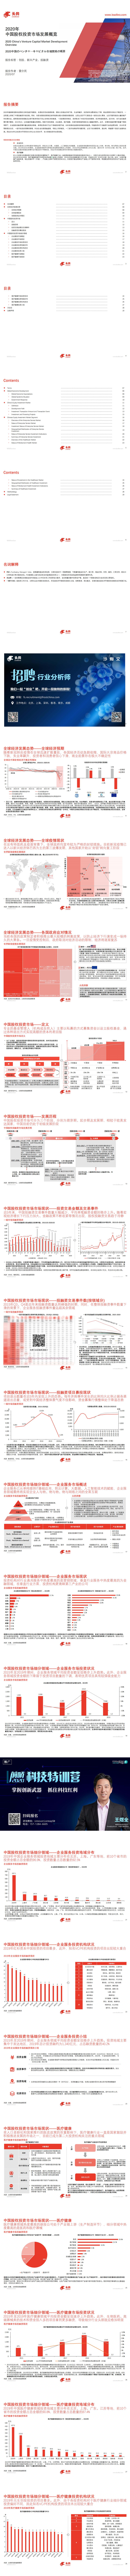 【头豹】2020年中国股权投资市场发展概览_0.jpg